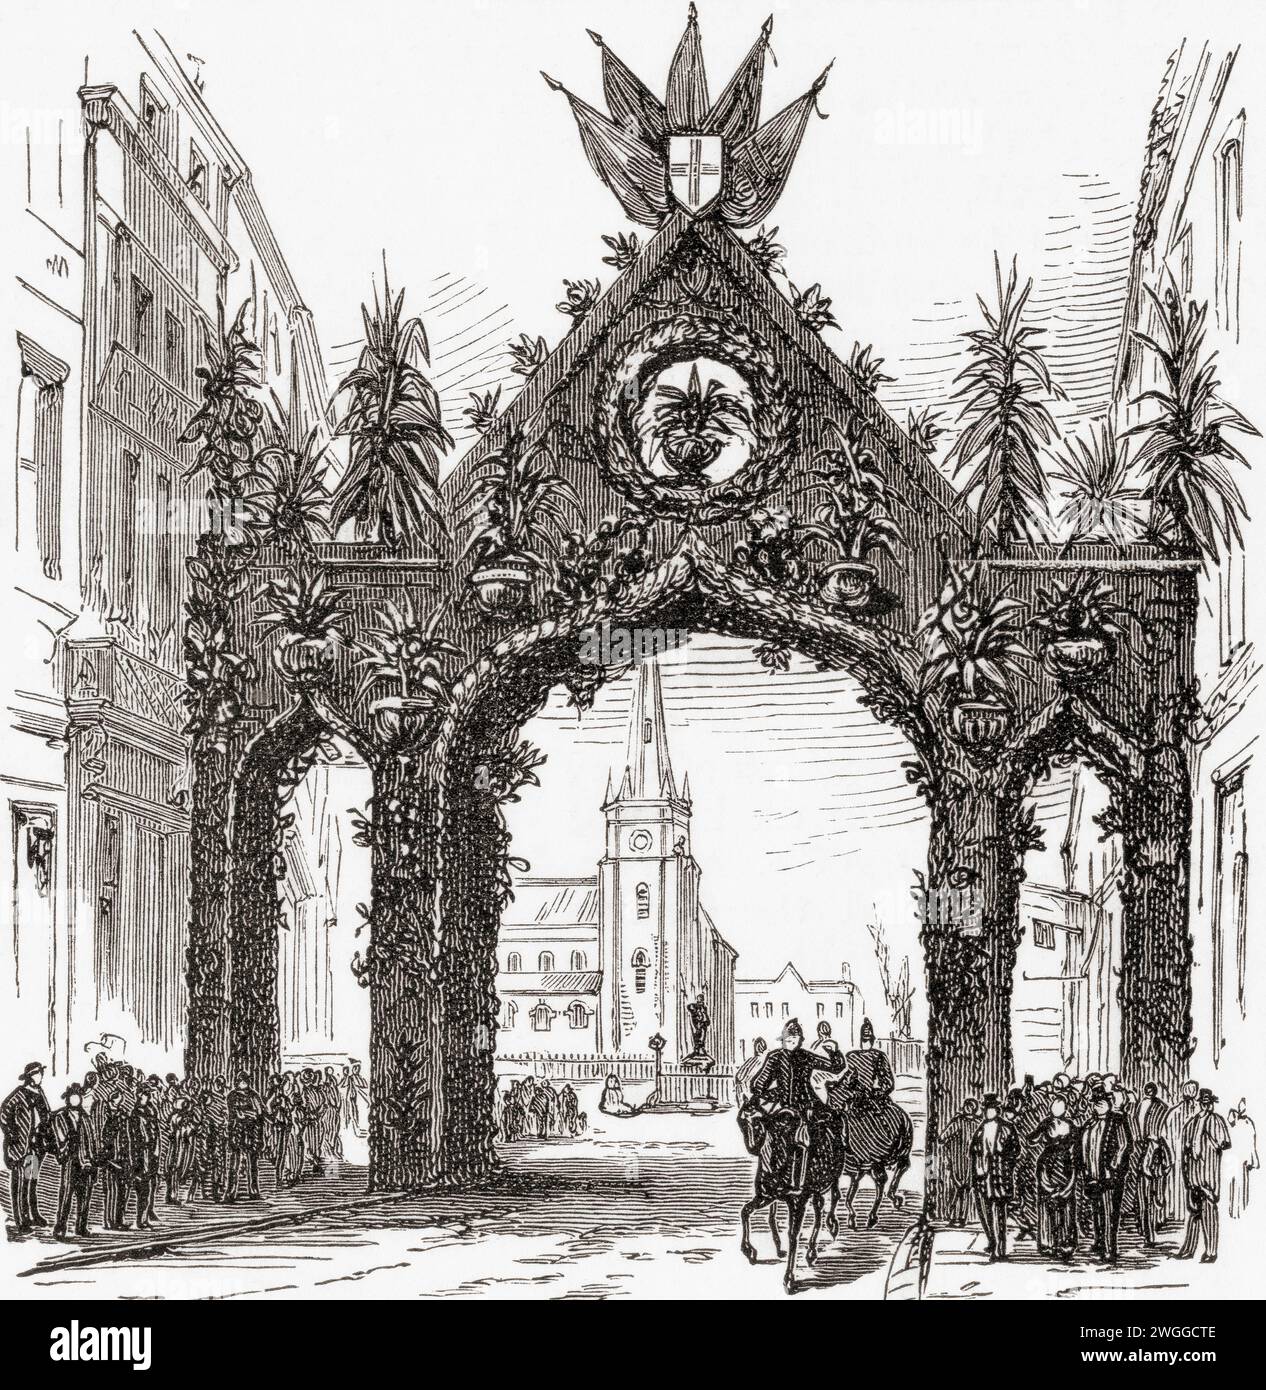 Floral Arch, arène, Birmingham, Angleterre, érigé pour marquer la visite de la reine Victoria à Birmingham le 23 mars 1887, année du Jubilé d'Or. Tiré du London Illustrated News, publié le 26 mars 1887. Banque D'Images